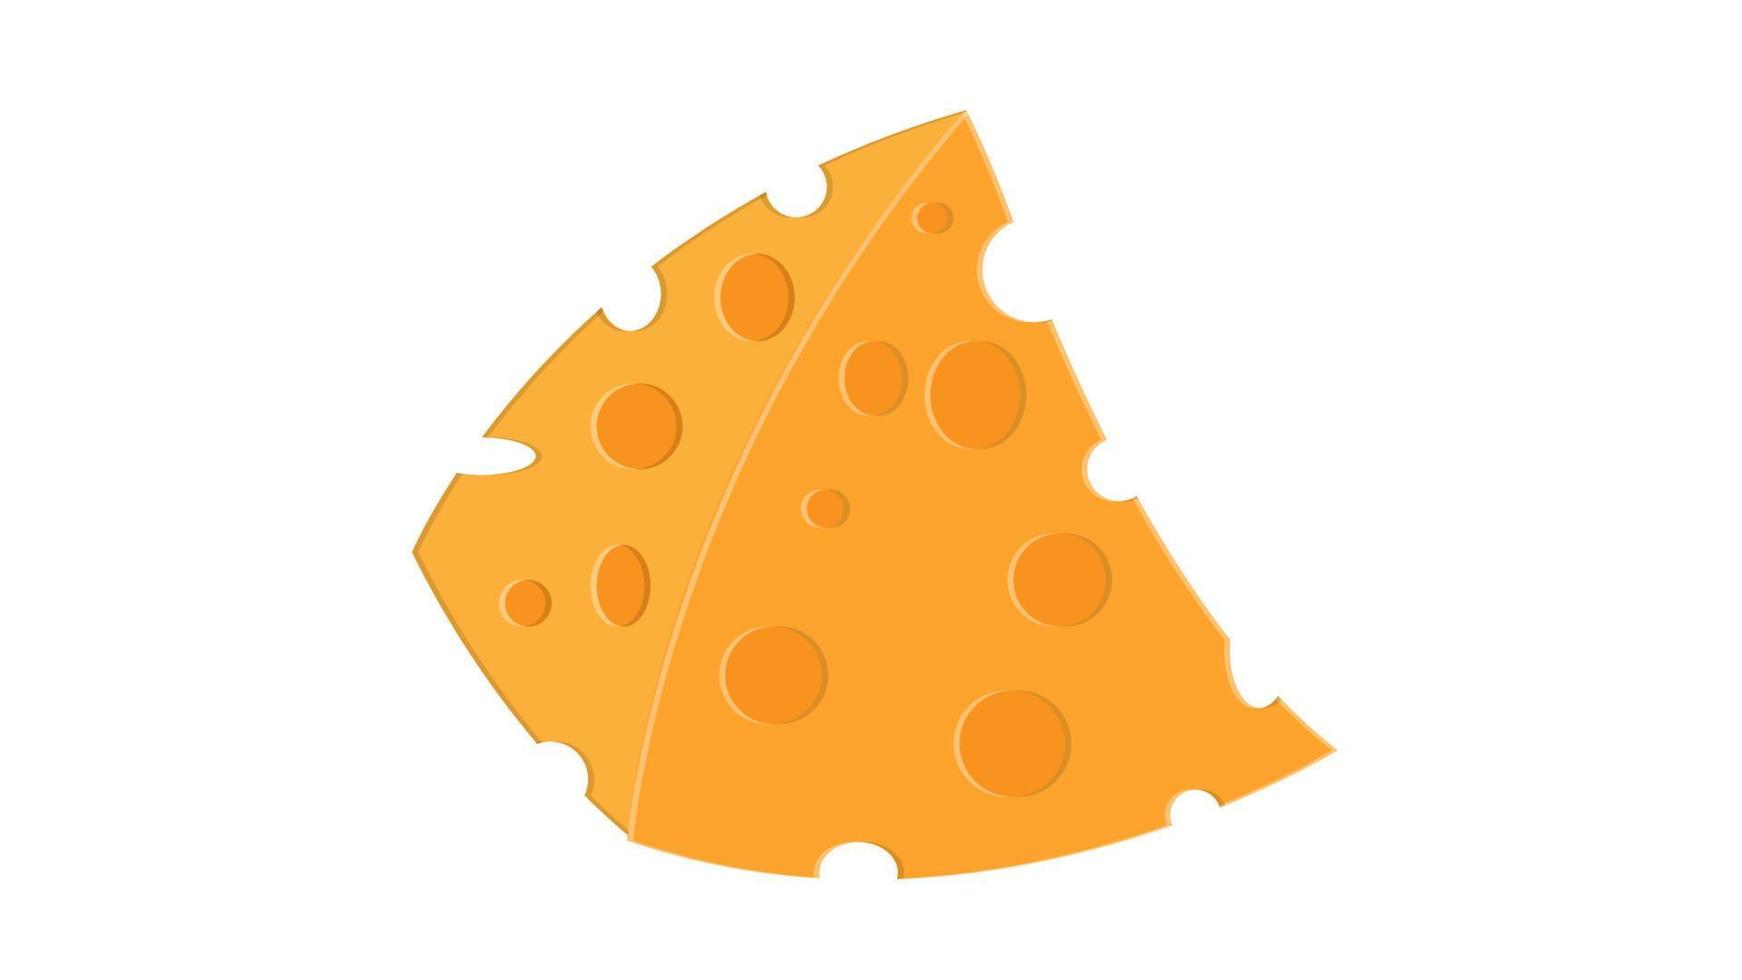 queijo em um fundo branco, ilustração vetorial. uma apetitosa fatia triangular de queijo com buracos. queijo francês de aroma delicado. Requeijão cremoso vetor